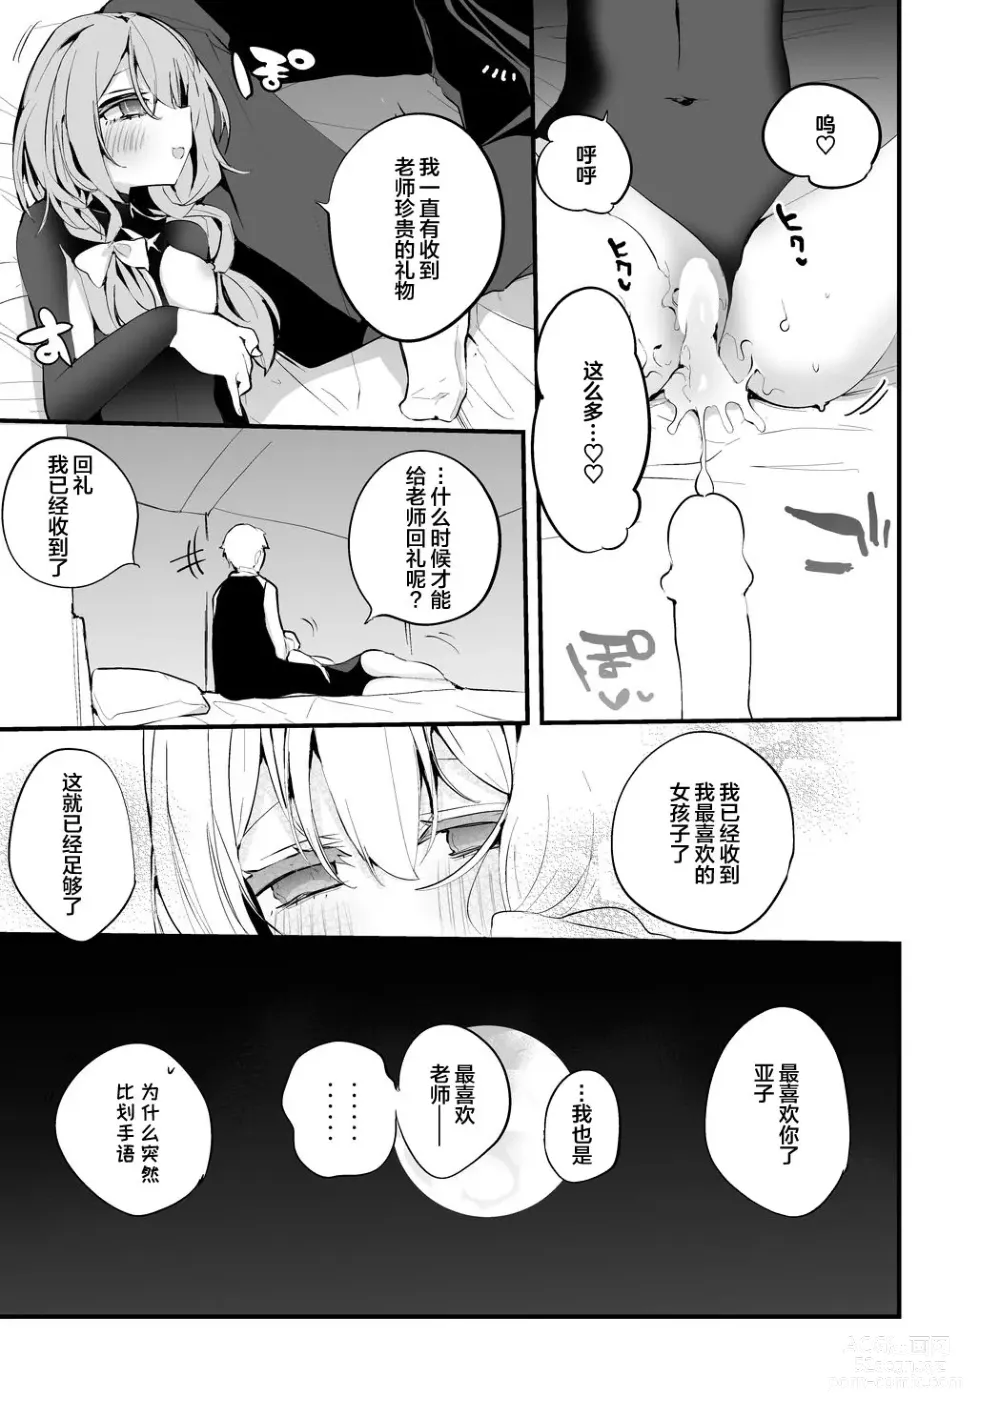 Page 48 of doujinshi Seishun x Ero x Matome Hon